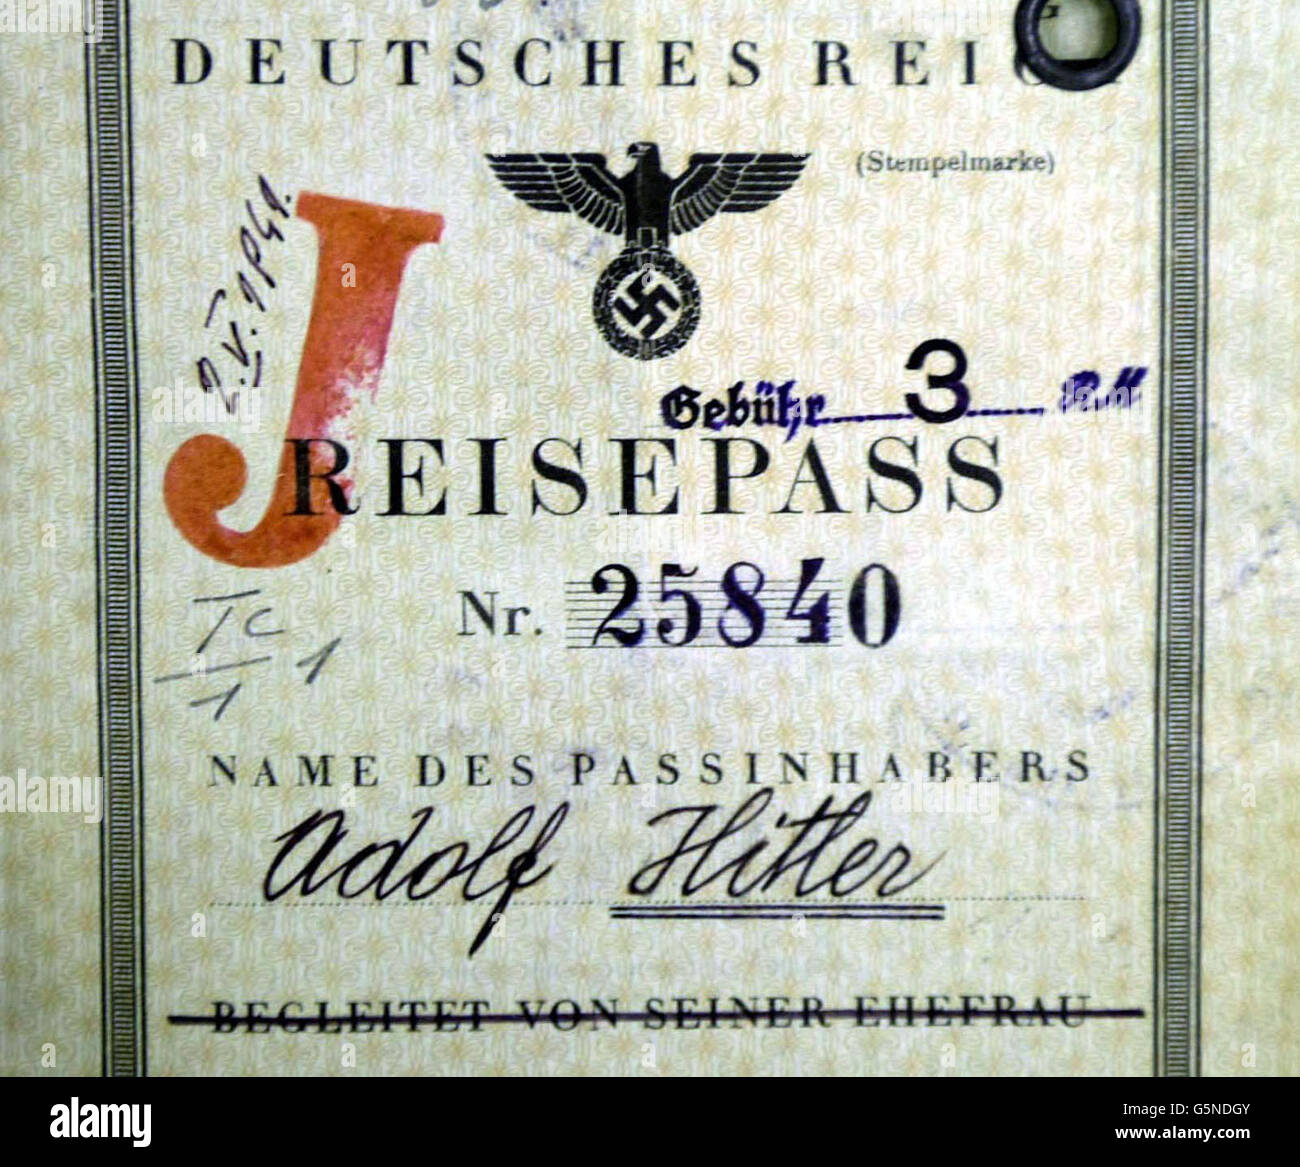 Der gefälschte Pass Adolf Hitlers wurde ironisch mit einem großen 'J' auf die Außenseite gestempelt, um anzuzeigen, dass er jüdisch war, was während des Zweiten Weltkriegs von der Sondereinsatzleitung (SOE) angefertigt und zum ersten Mal beim Public Record Officic der Öffentlichkeit freigegeben wurde. * in Kew, London. Der Pass wurde zusammen mit anderen geheimen Dokumenten, die vom Special Operations Executive (SOE) aufbewahrt wurden, enthüllt, darunter bulgarische Feuerwaffenlizenzen, griechische Reisegenehmigungen und kroatische Fischereilizenzen. Der Pass zeigt das Fachwissen, das professionelle Fälscher während des Konflikts benötigen, um Briten zu versorgen Stockfoto